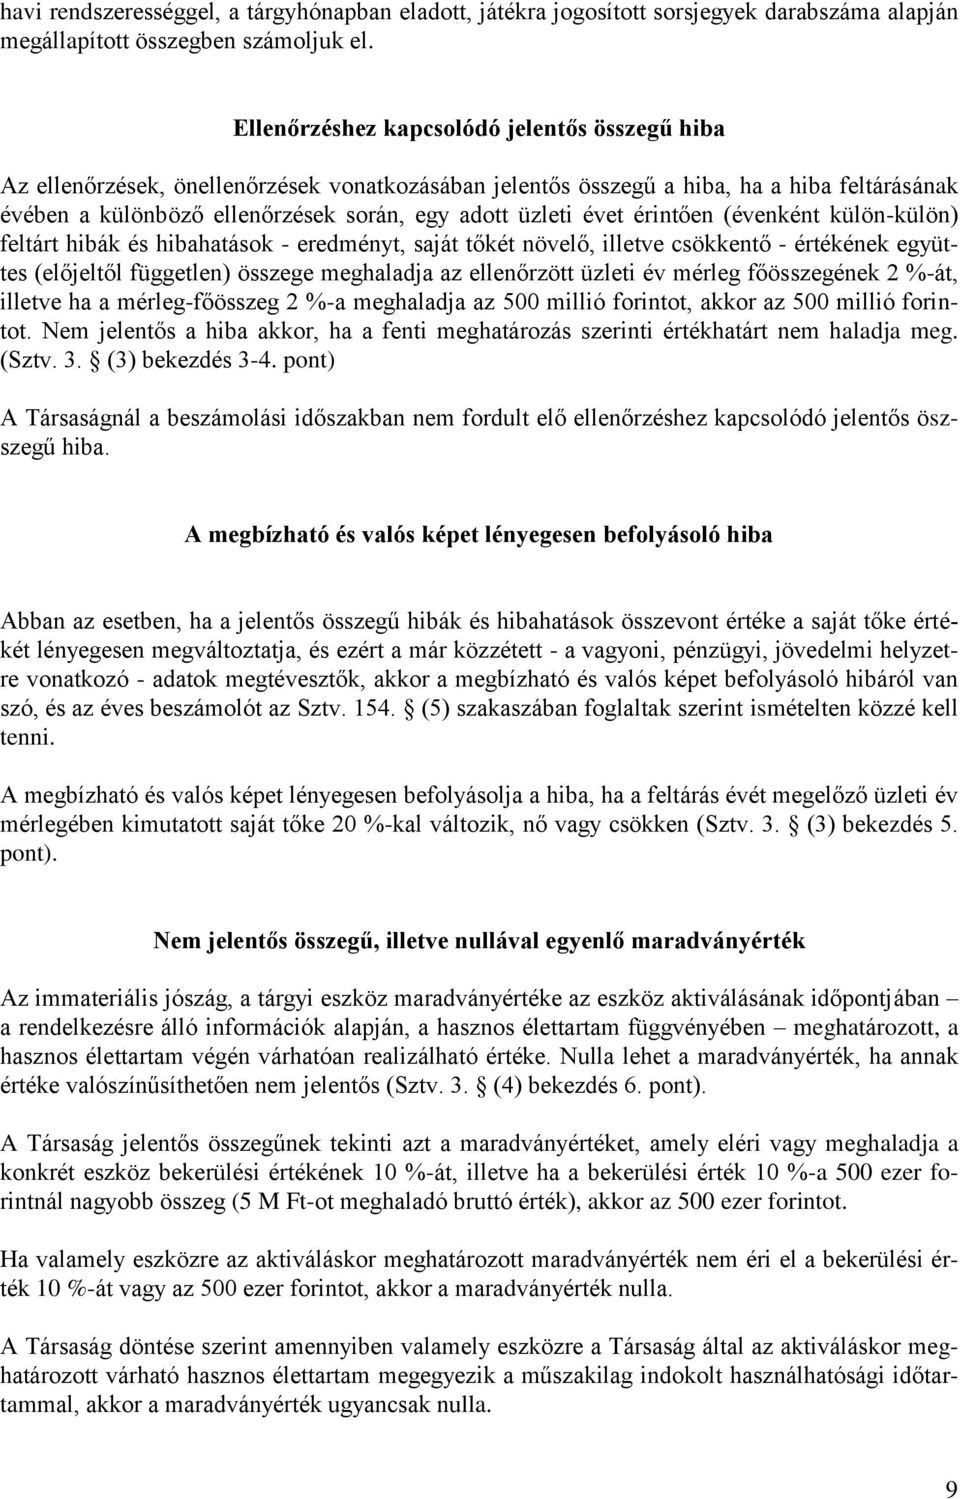 KIEGÉSZÍTŐ MELLÉKLET. a Szerencsejáték Zártkörűen Működő Részvénytársaság  december 31-ei éves beszámolójához. Budapest, április 9. - PDF Free Download